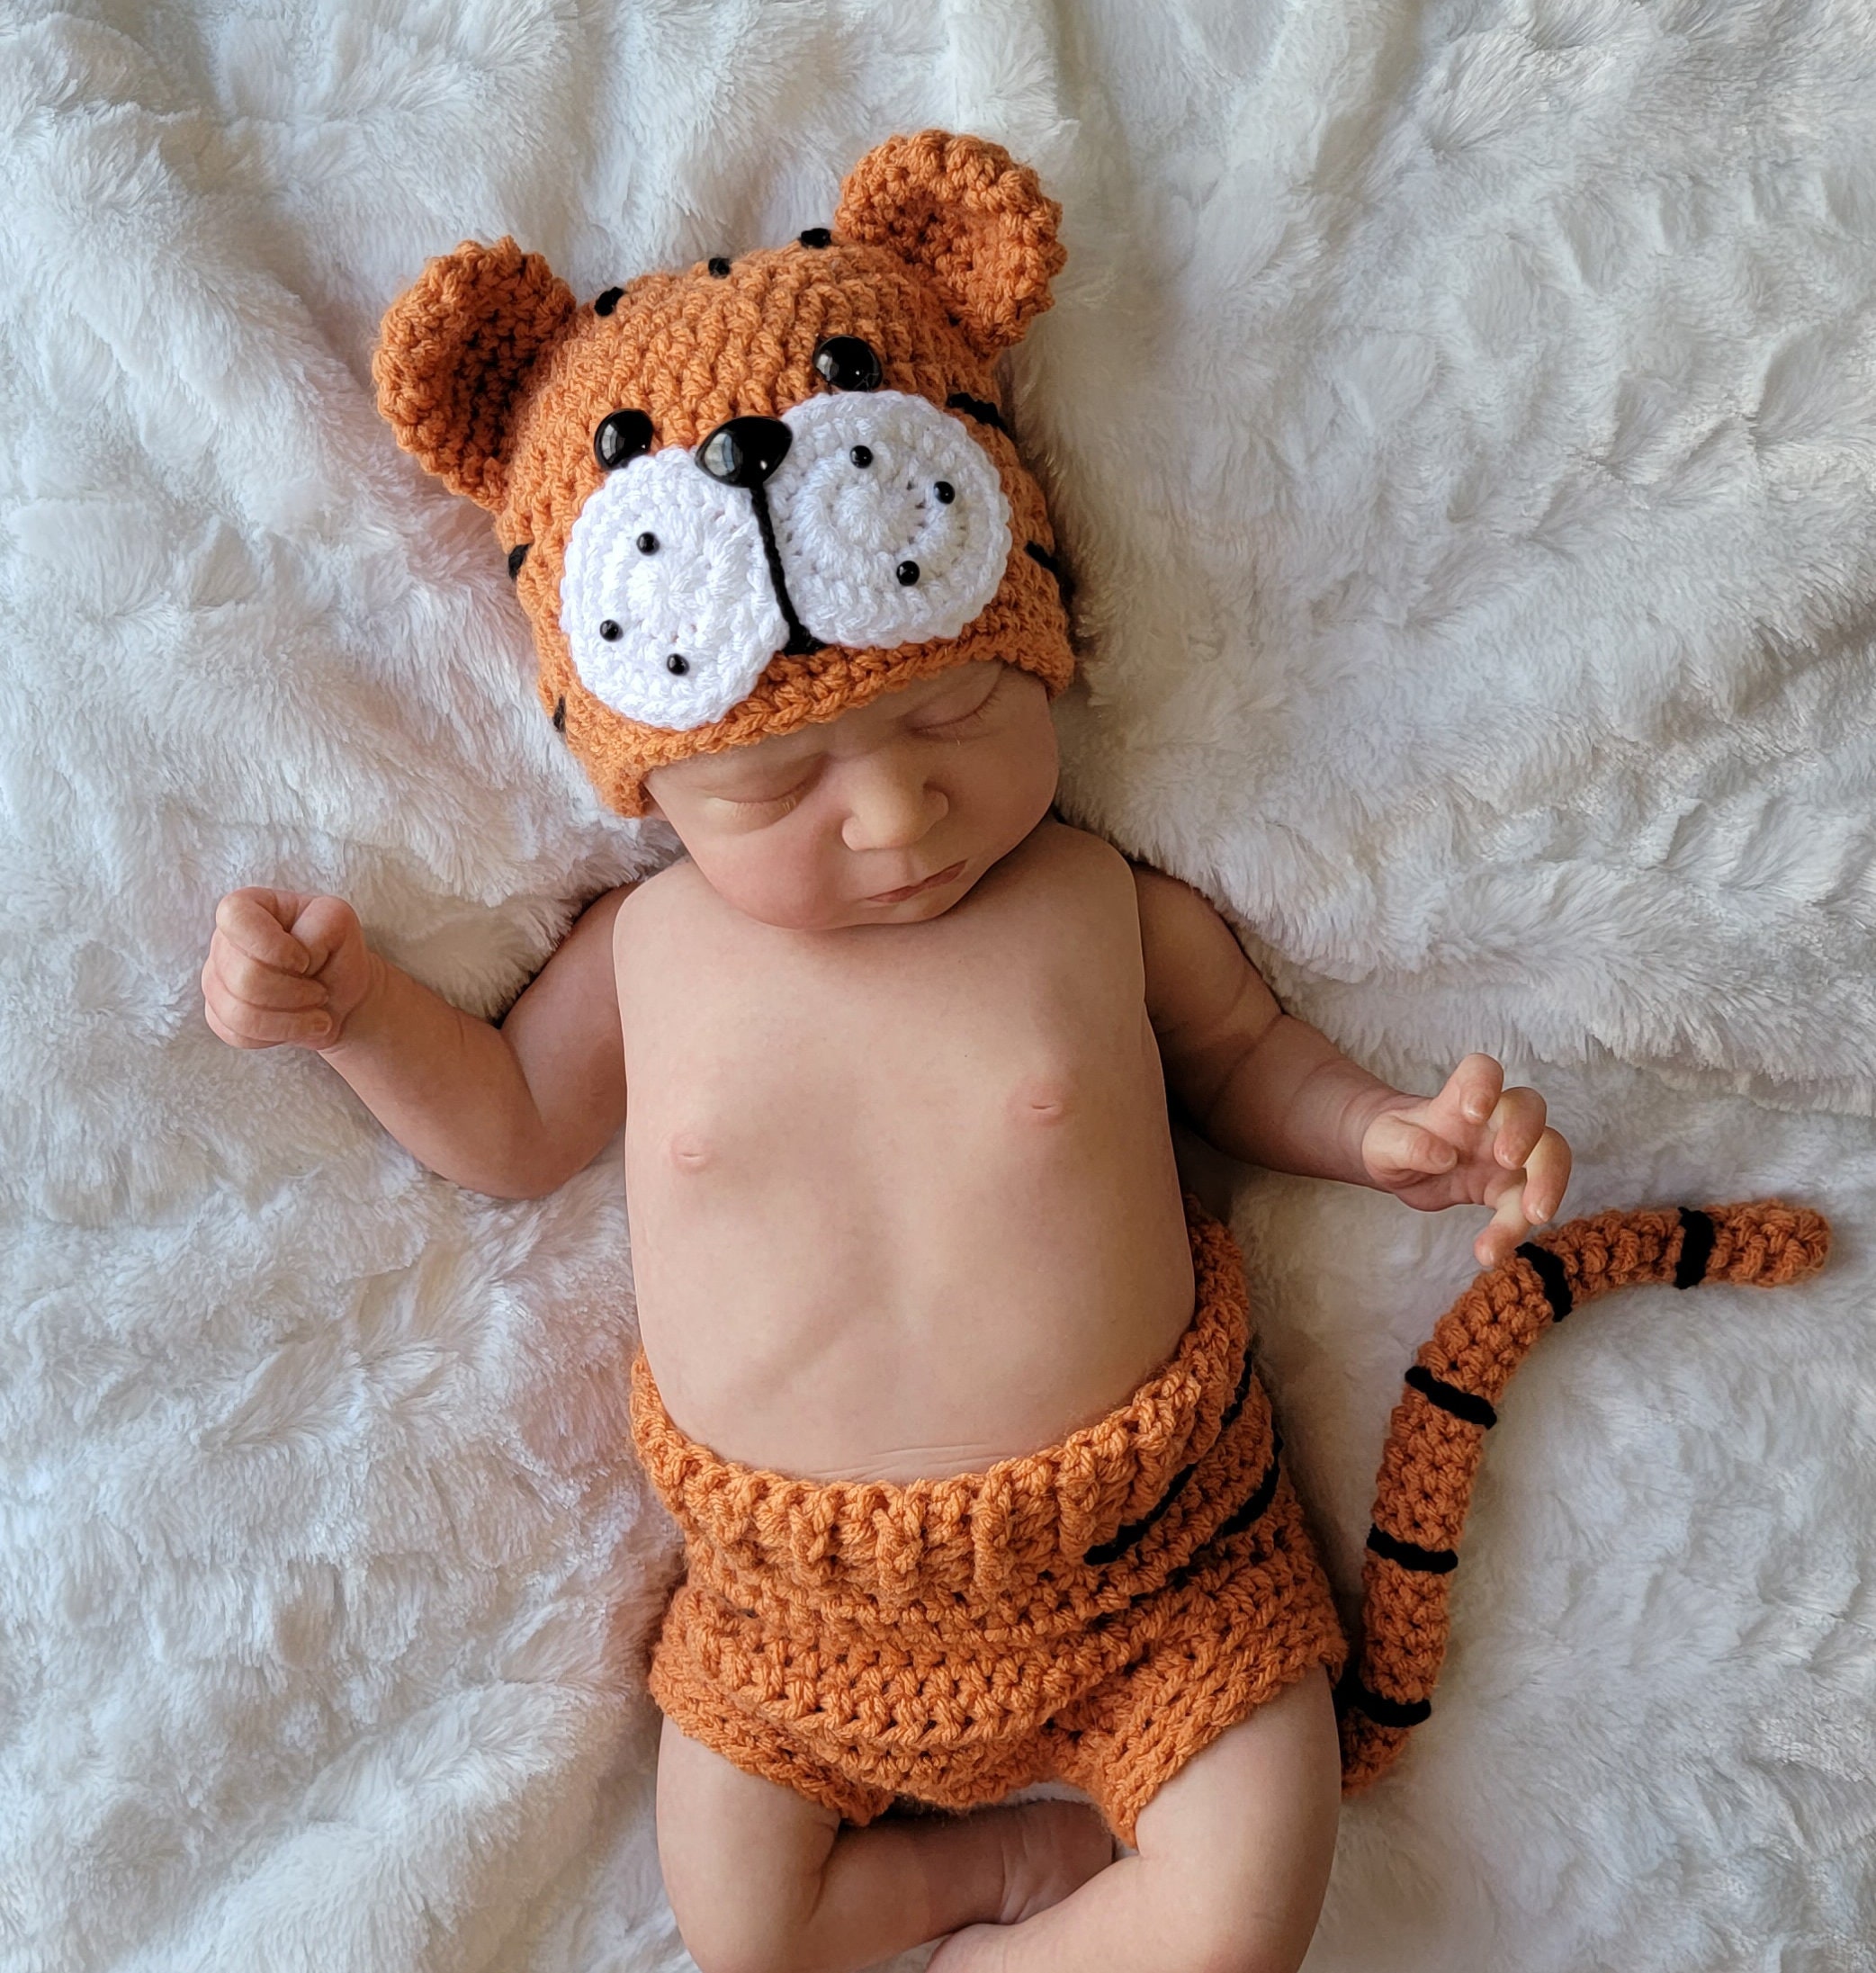 Disfraz de Halloween para bebés, Traje de sesión de fotos para bebés, Thor  Outfit Handmade Knitted Photo Prop Accesorios para bebés (0-3 meses)